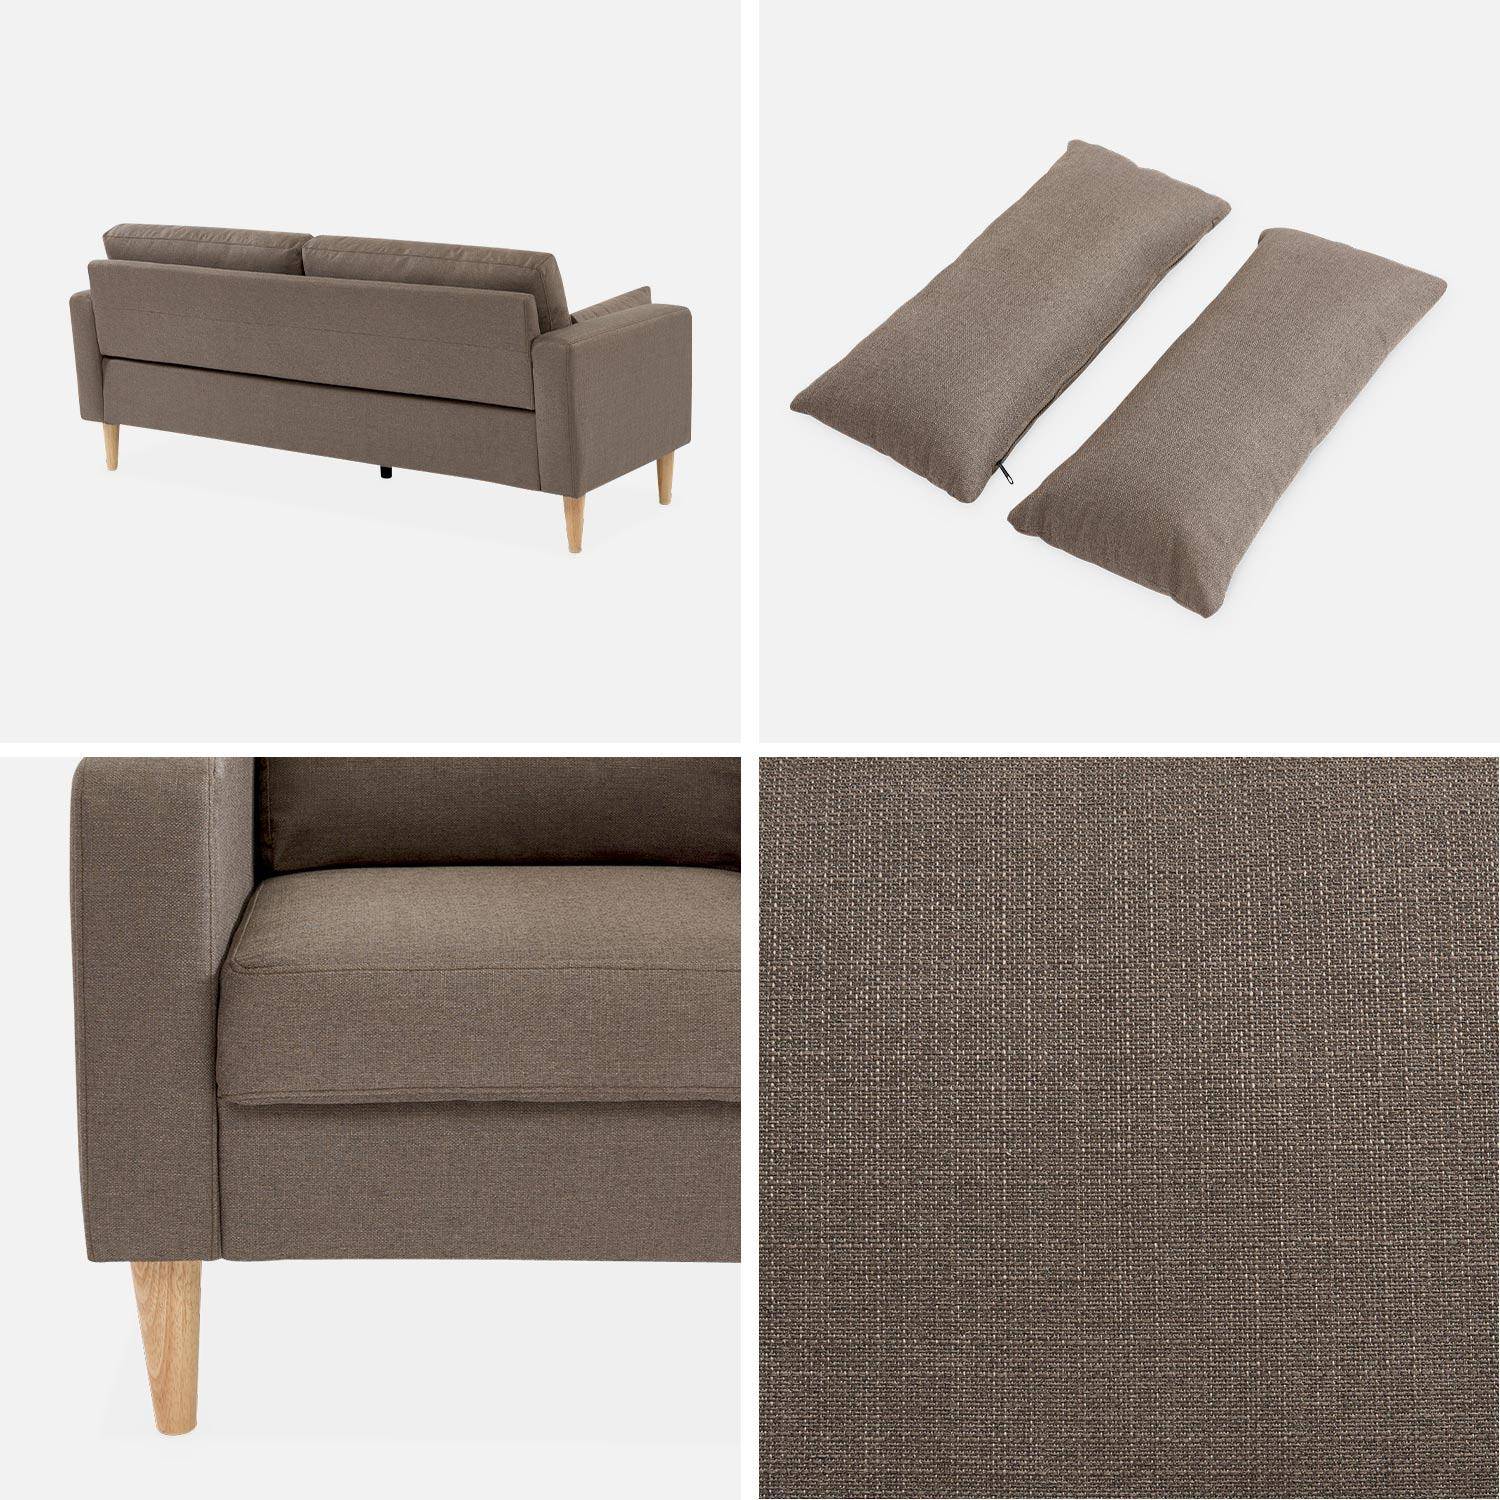 Donkergrijze stoffen driezits sofa - Bjorn - 3-zits bank met houten poten, scandinavische stijl   Photo4